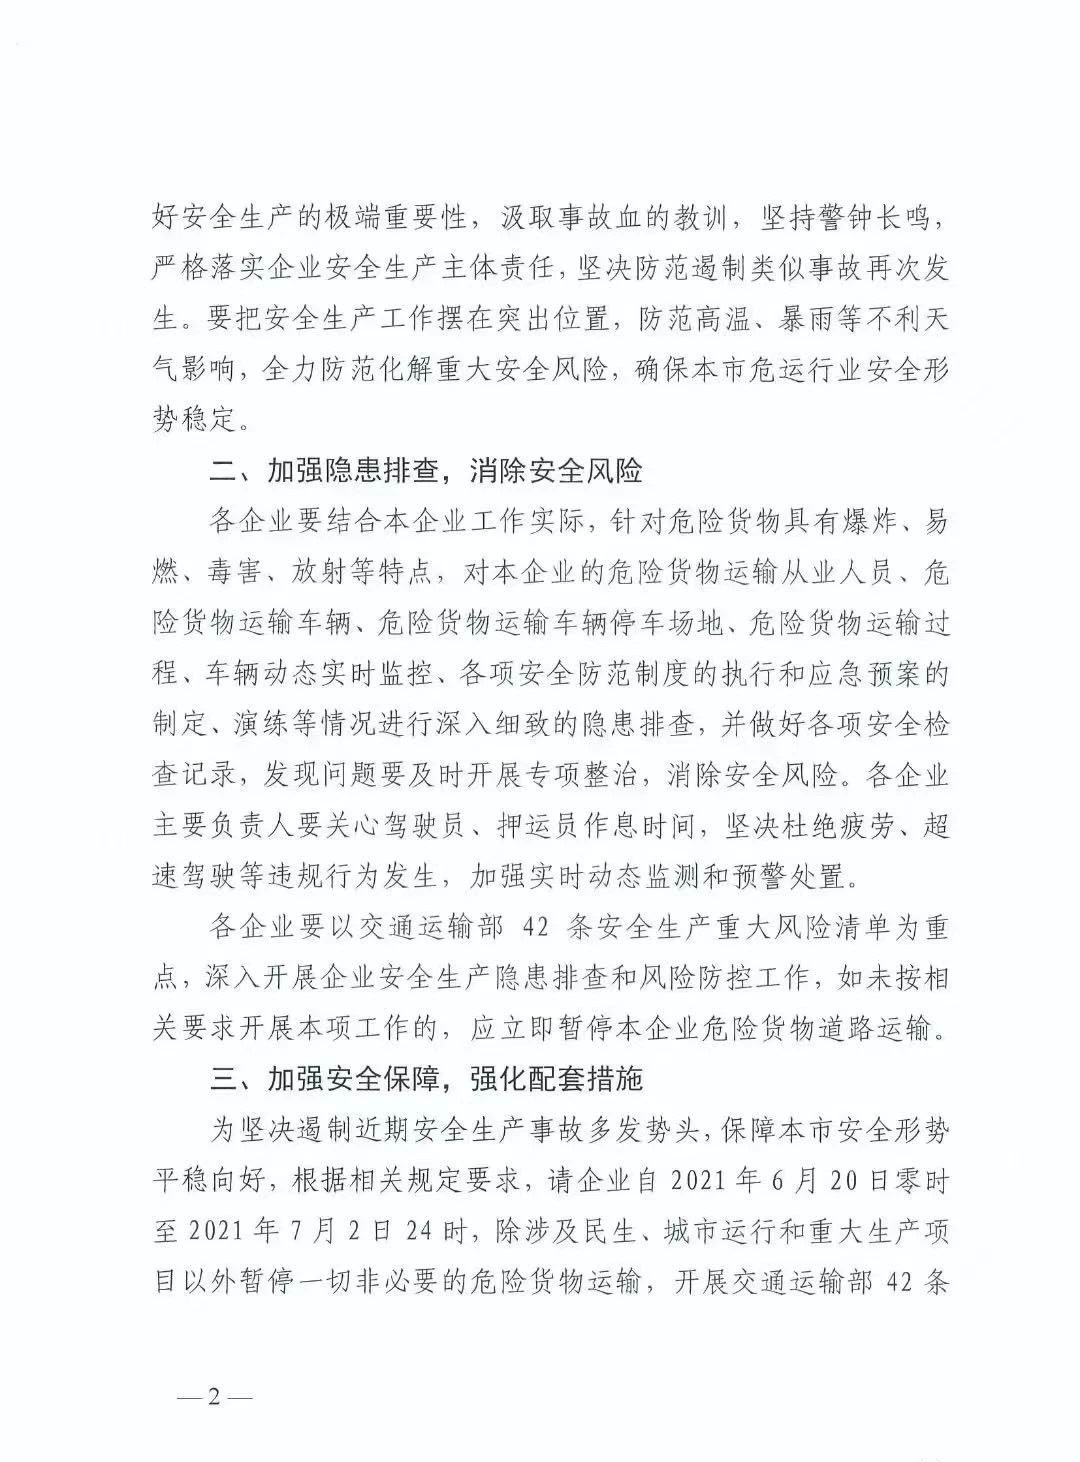 6月20日起，上海暂停一切非必要危险货物运输